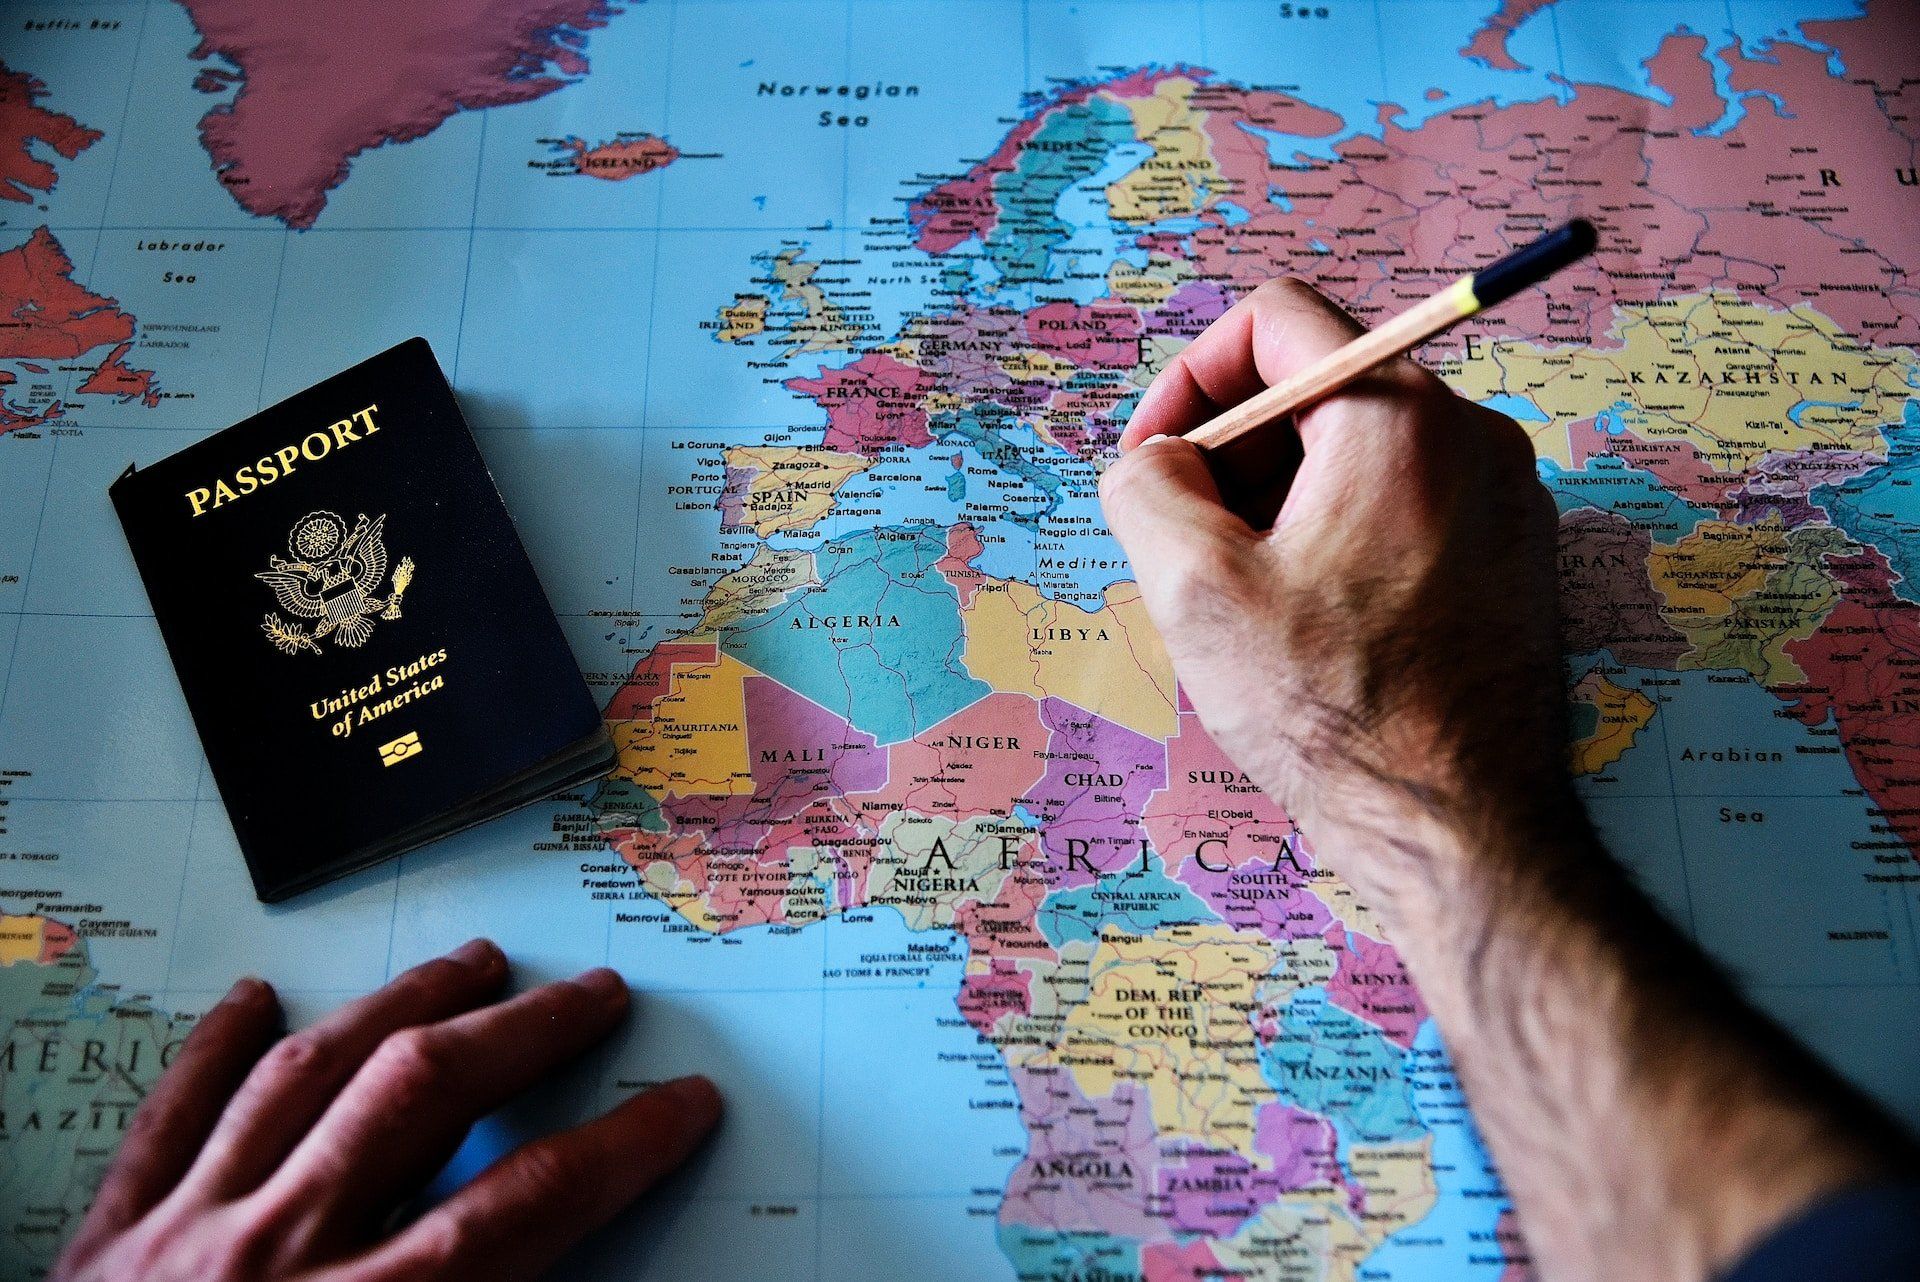 Térképen tollal jelölő kéz és útlevél